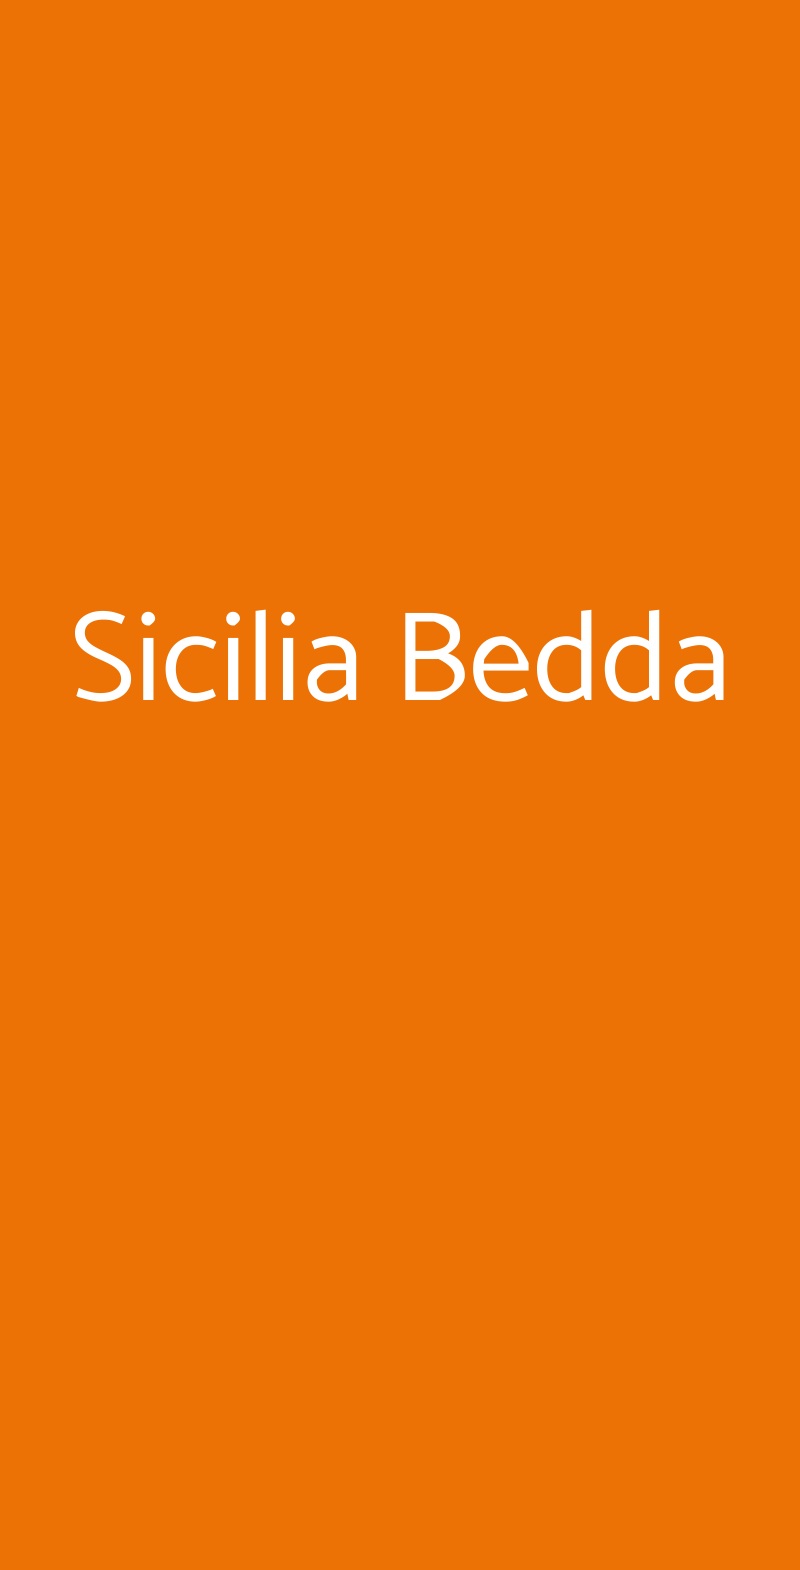 Sicilia Bedda Milano menù 1 pagina